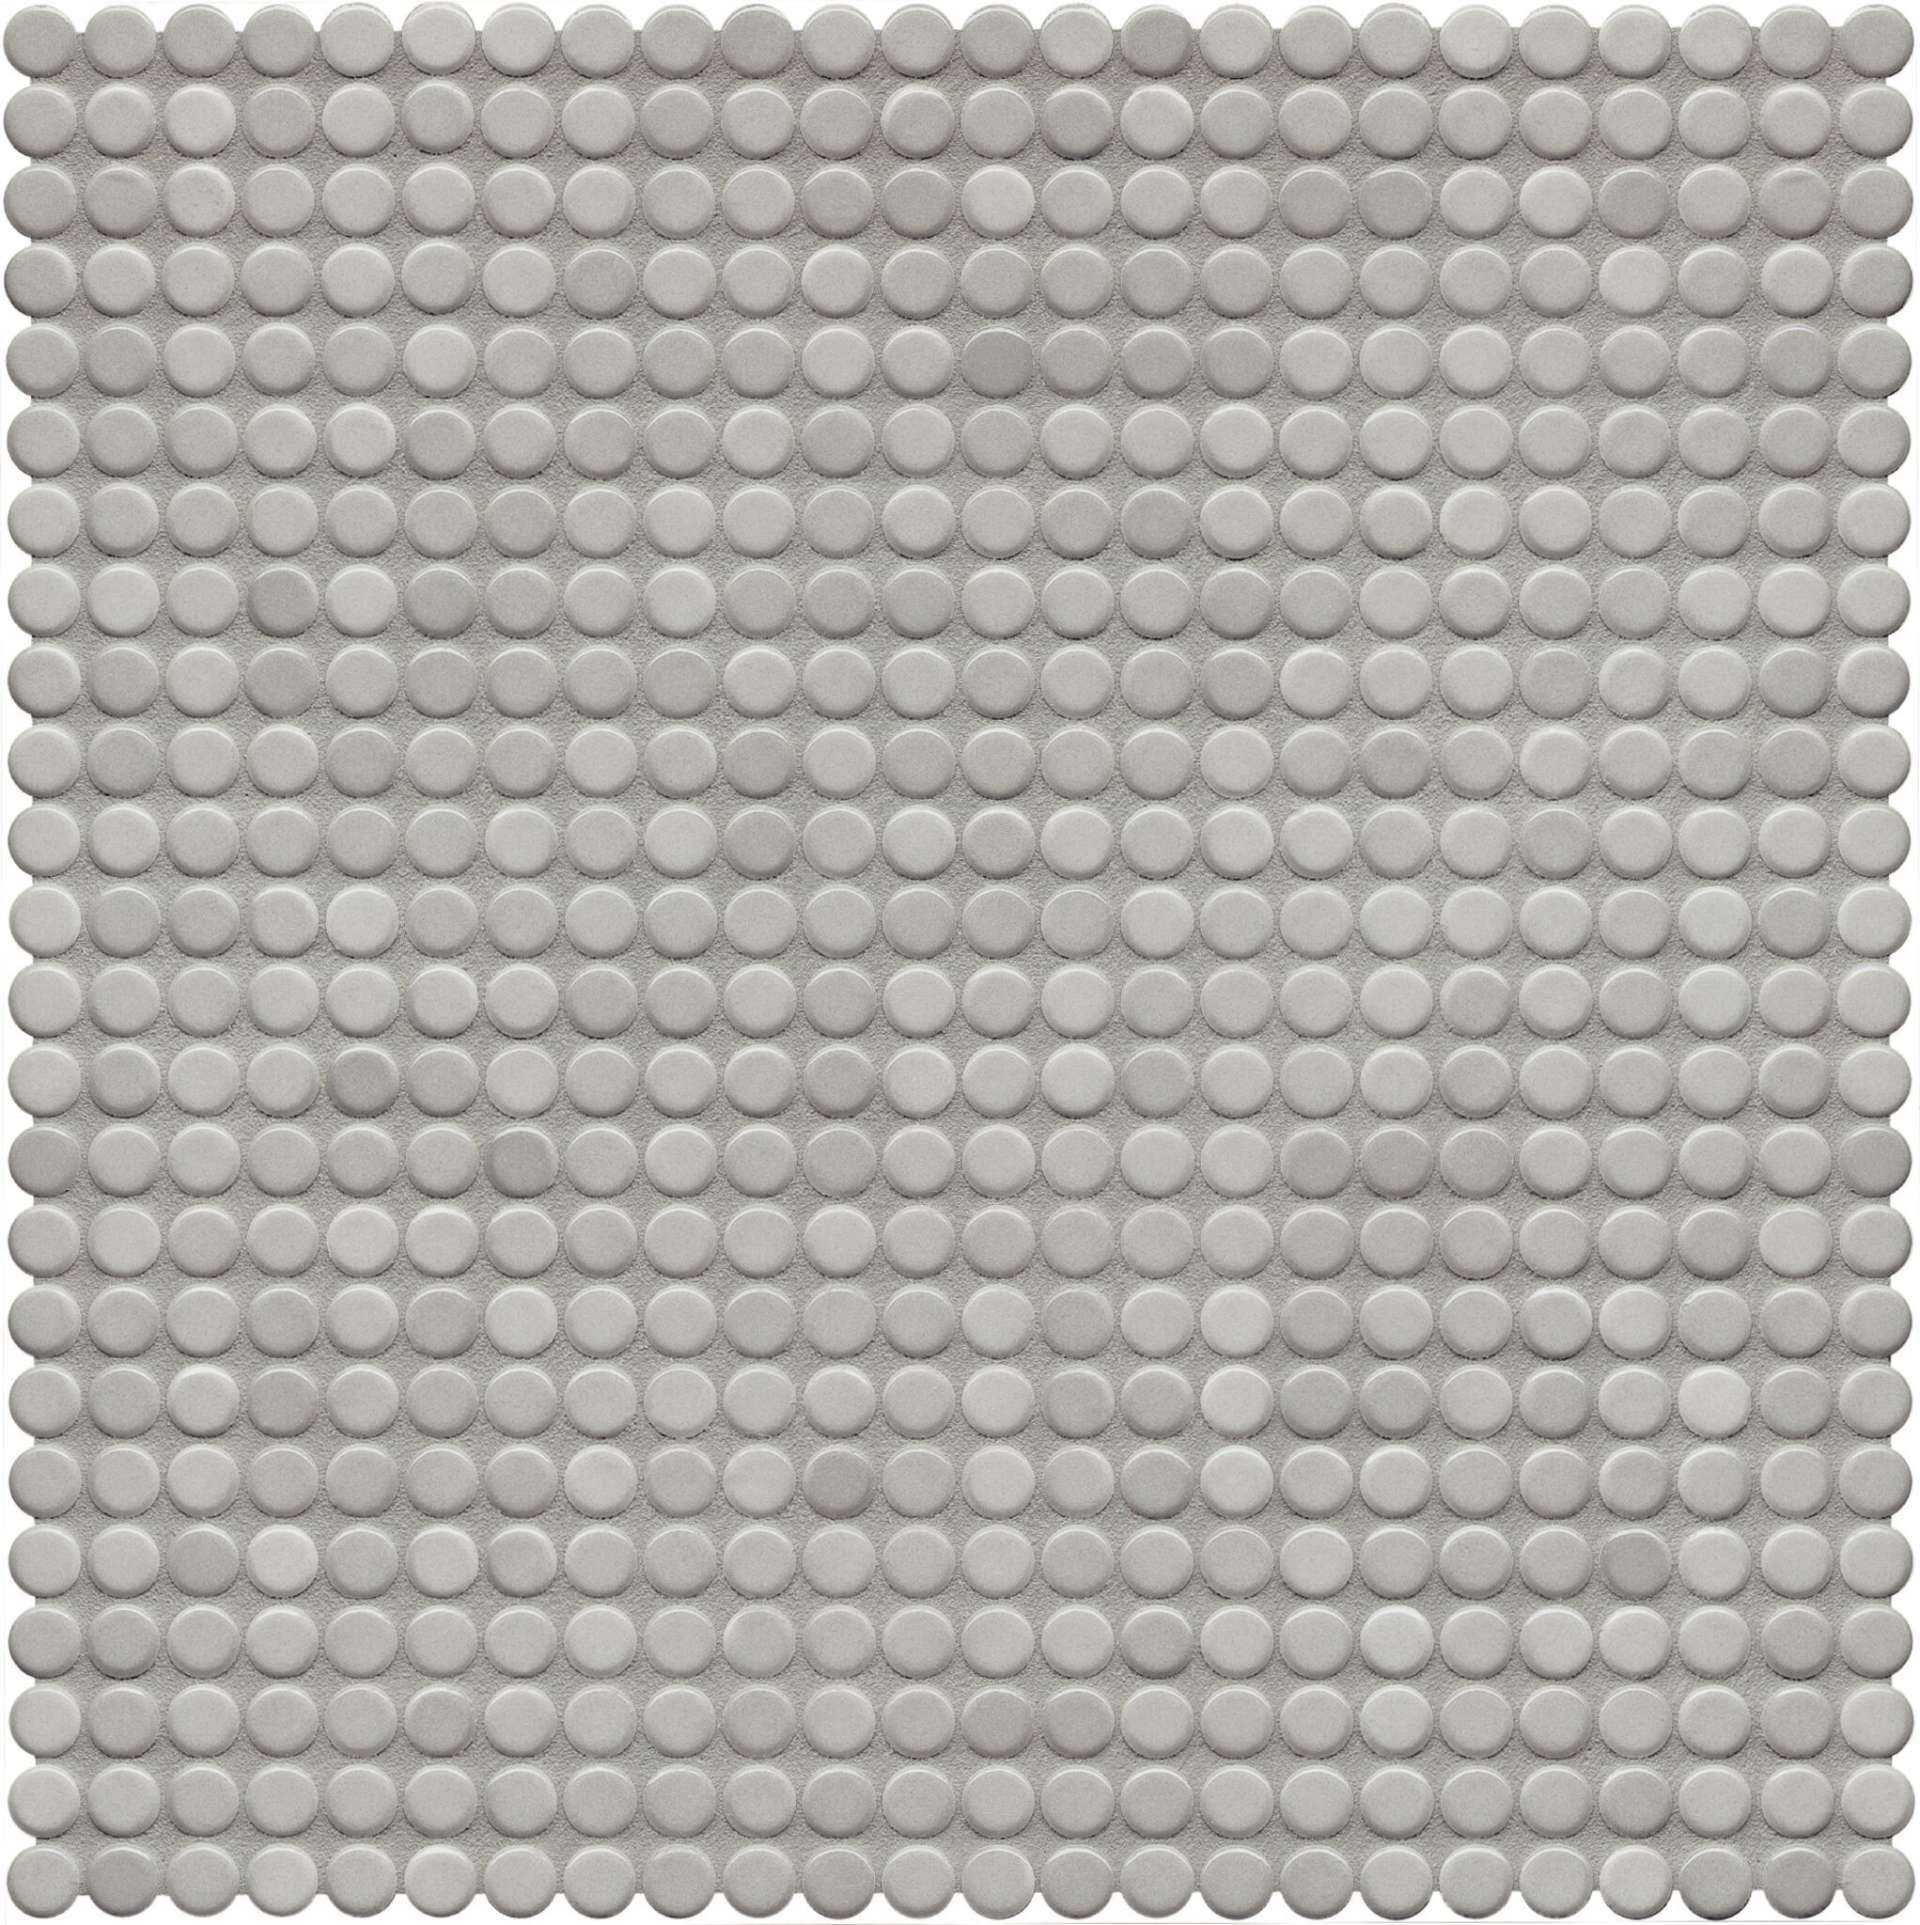 Мозаика Jasba Loop Diamantgr Hell 40004H-44, цвет серый, поверхность глянцевая, круг и овал, 316x316